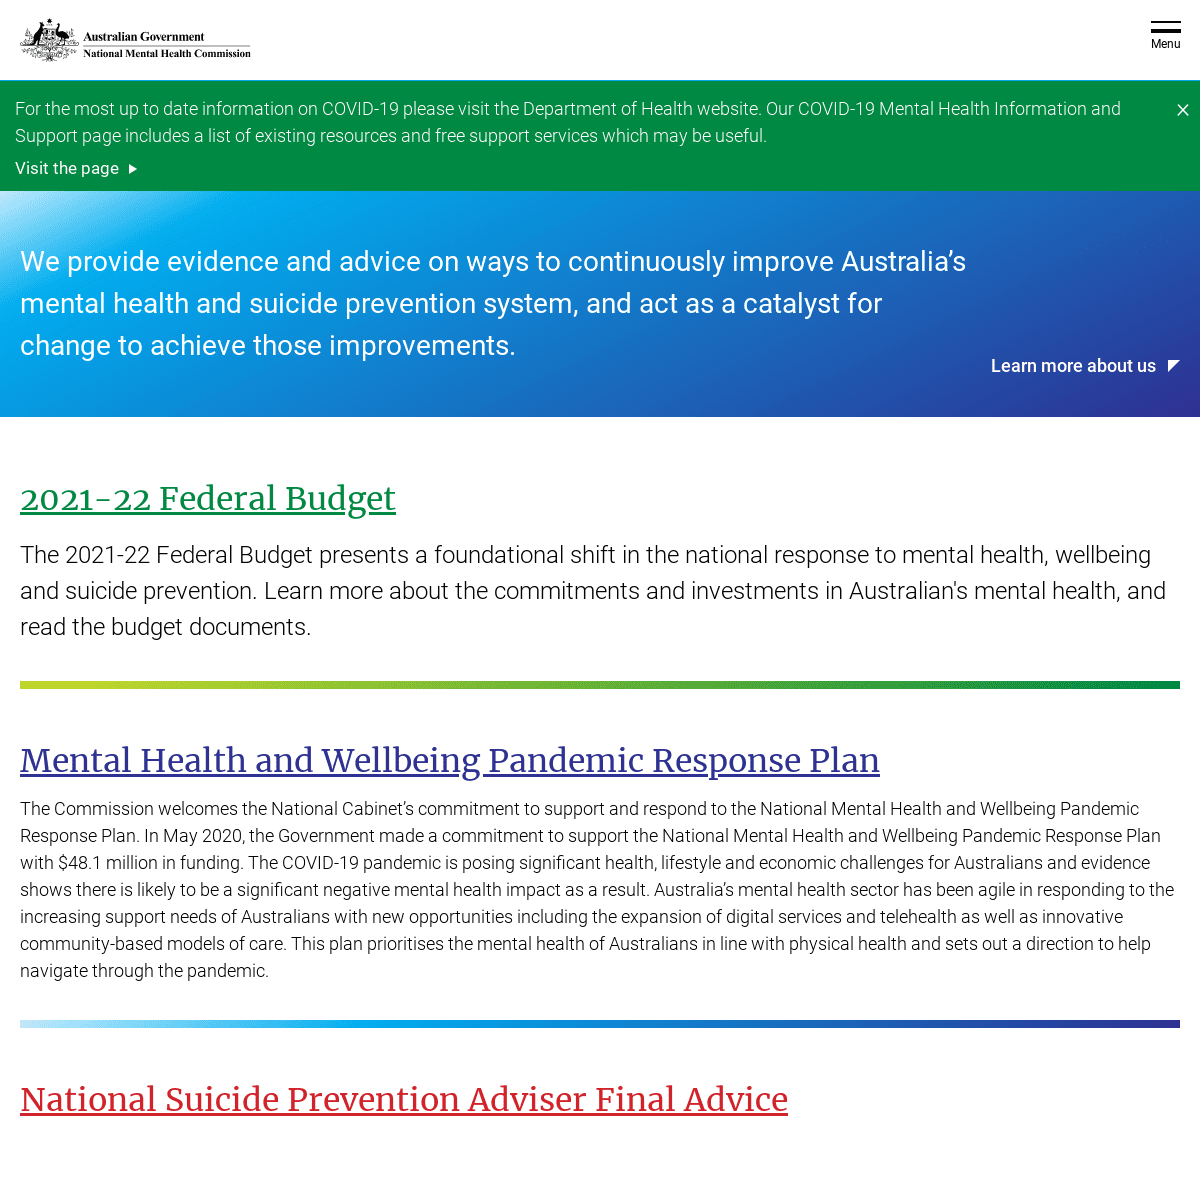 A complete backup of https://mentalhealthcommission.gov.au